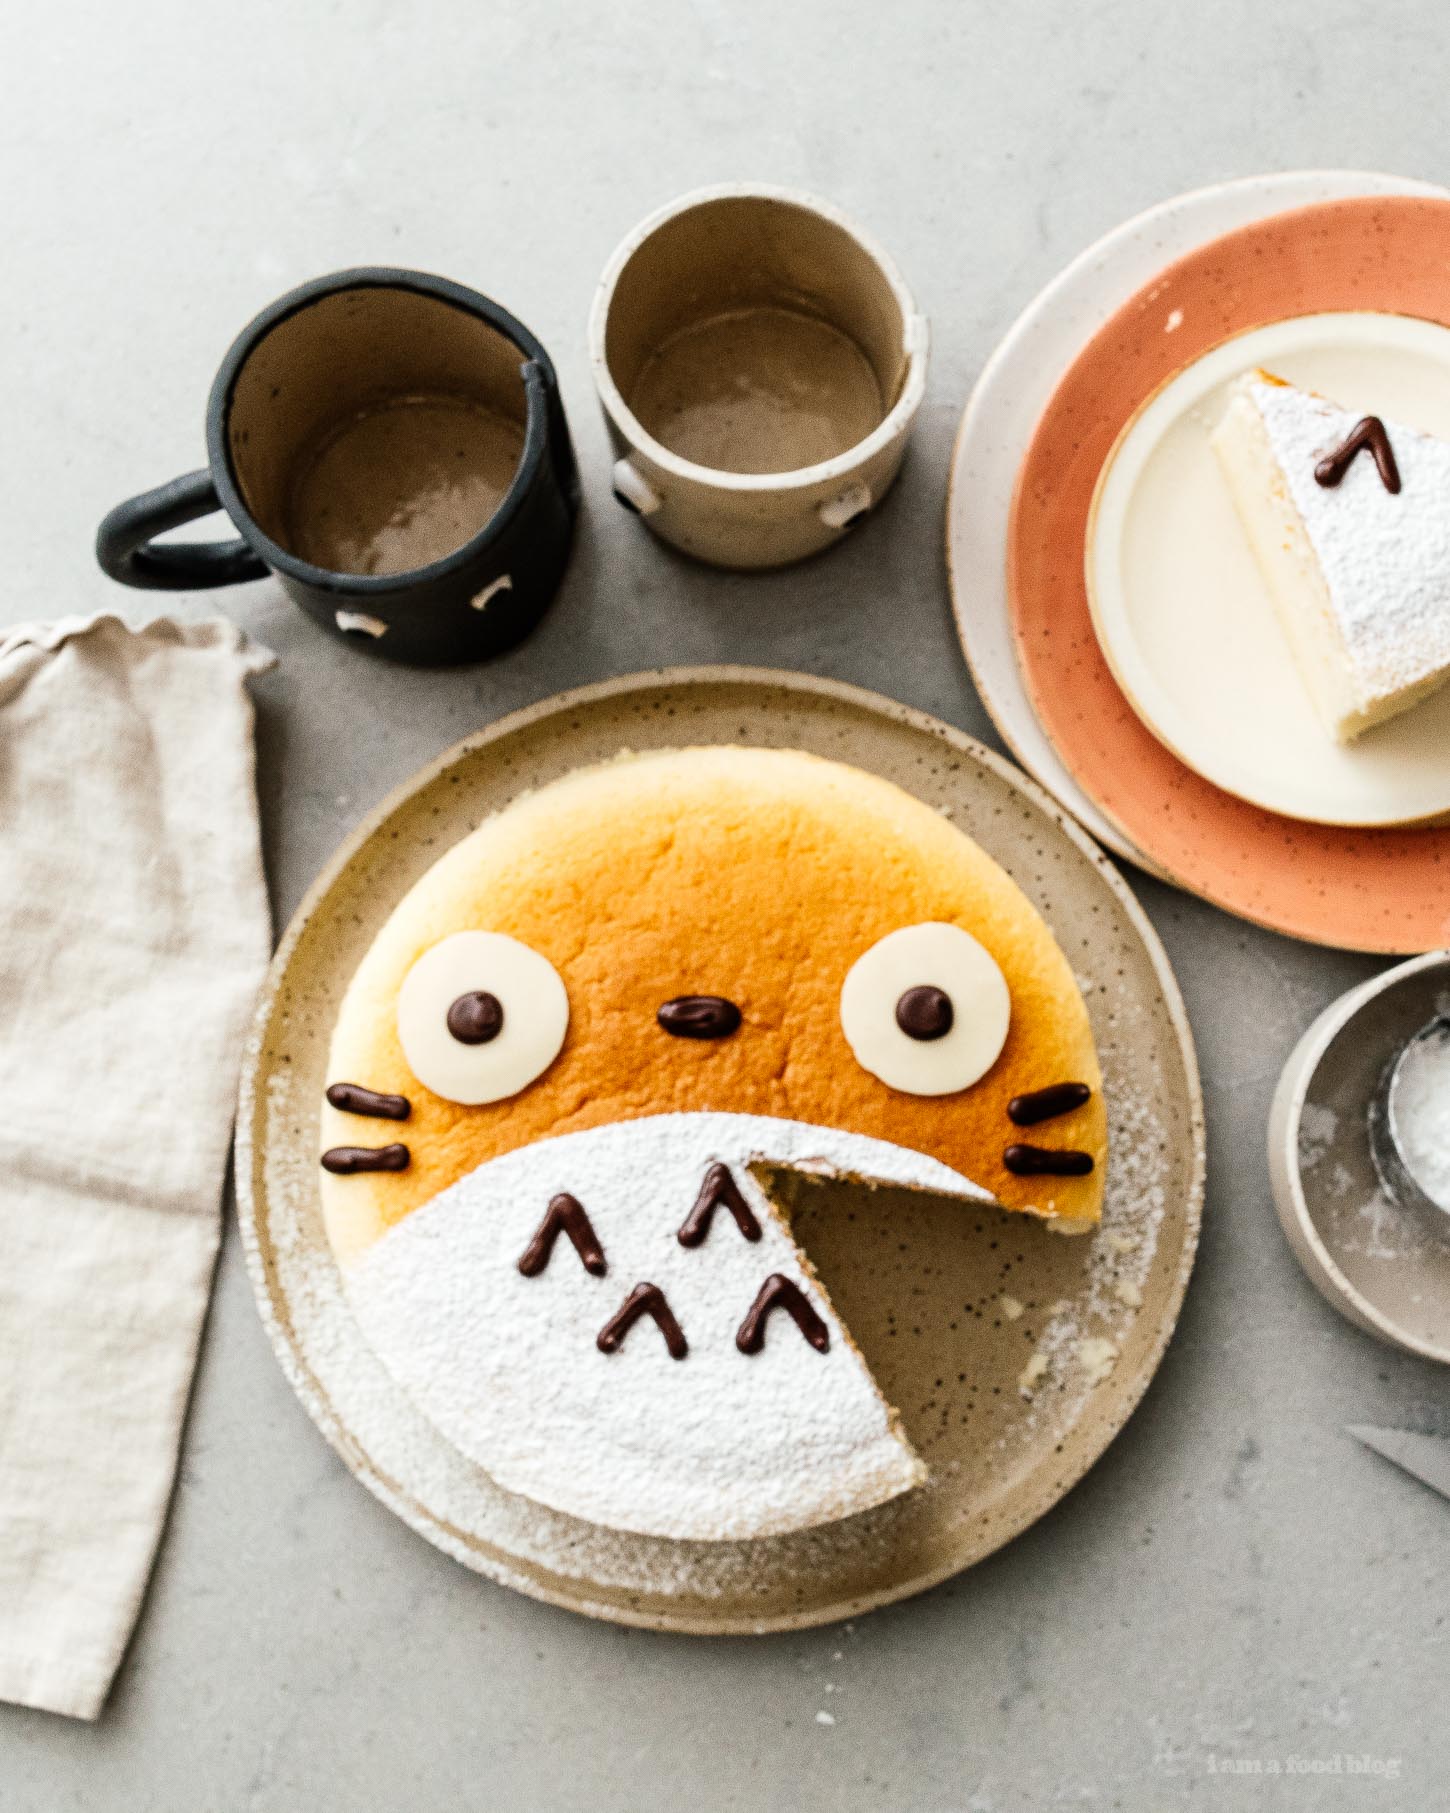 Un pastel de queso Totoro super lindo y esponjoso: un pastel de queso esponjoso, esponjoso y ligero como el aire con solo un toque de dulzura.  #cheesecake #japonesacheesecake #fluffycheesecake #totorocake #totorocheesecake #totorofood #kawaiifood